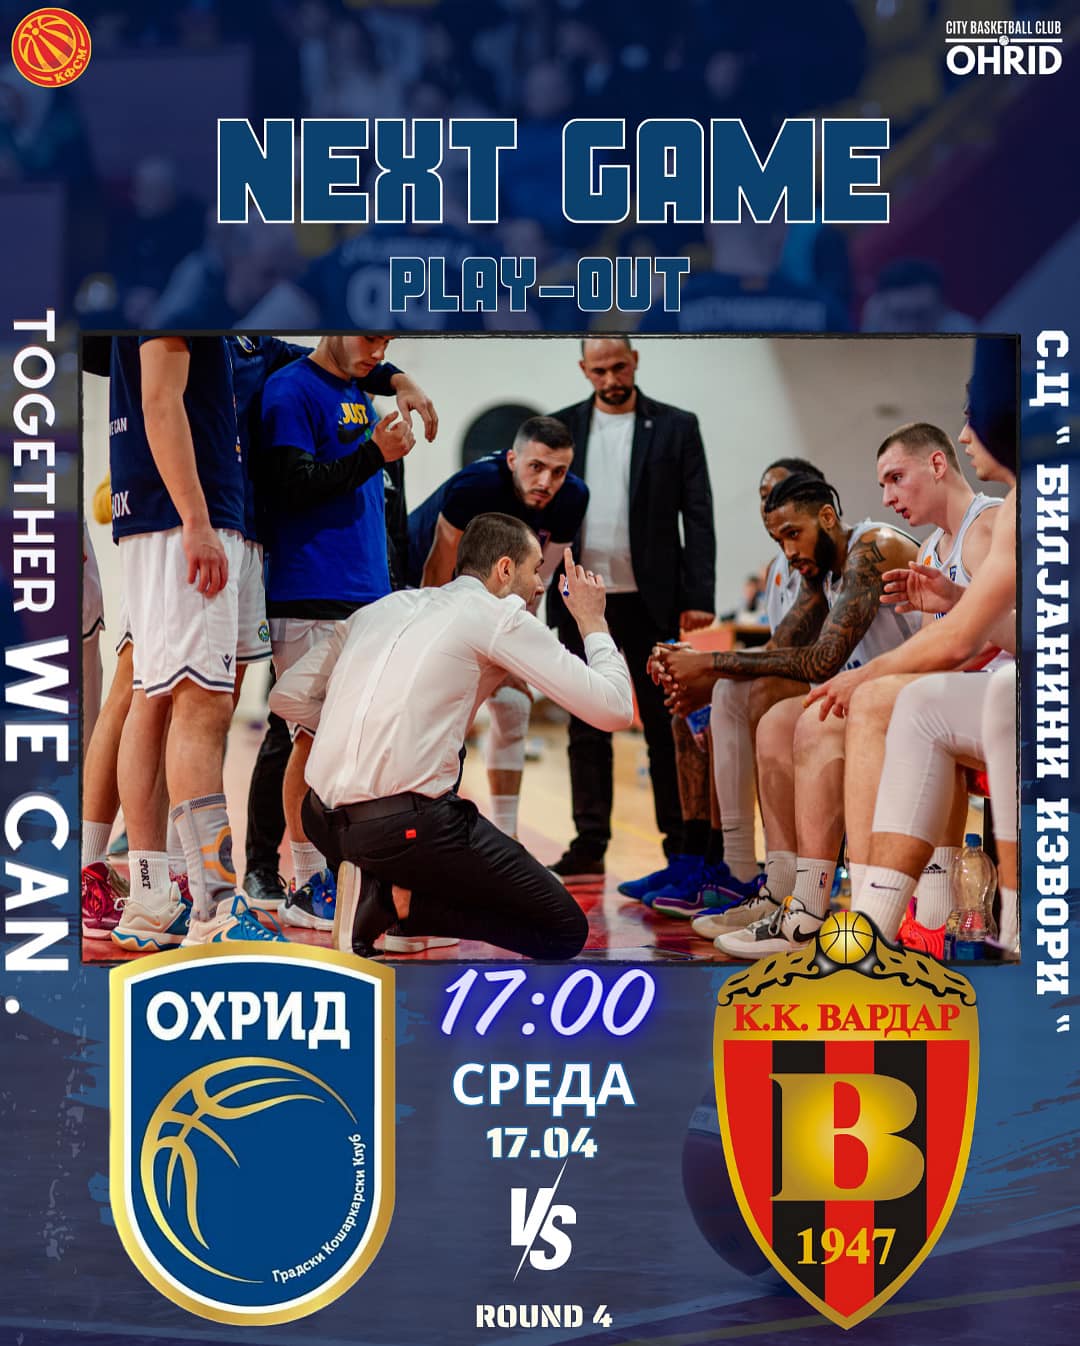 Охридските кошаркари утре го играат последниот меч за опстанок во елитата